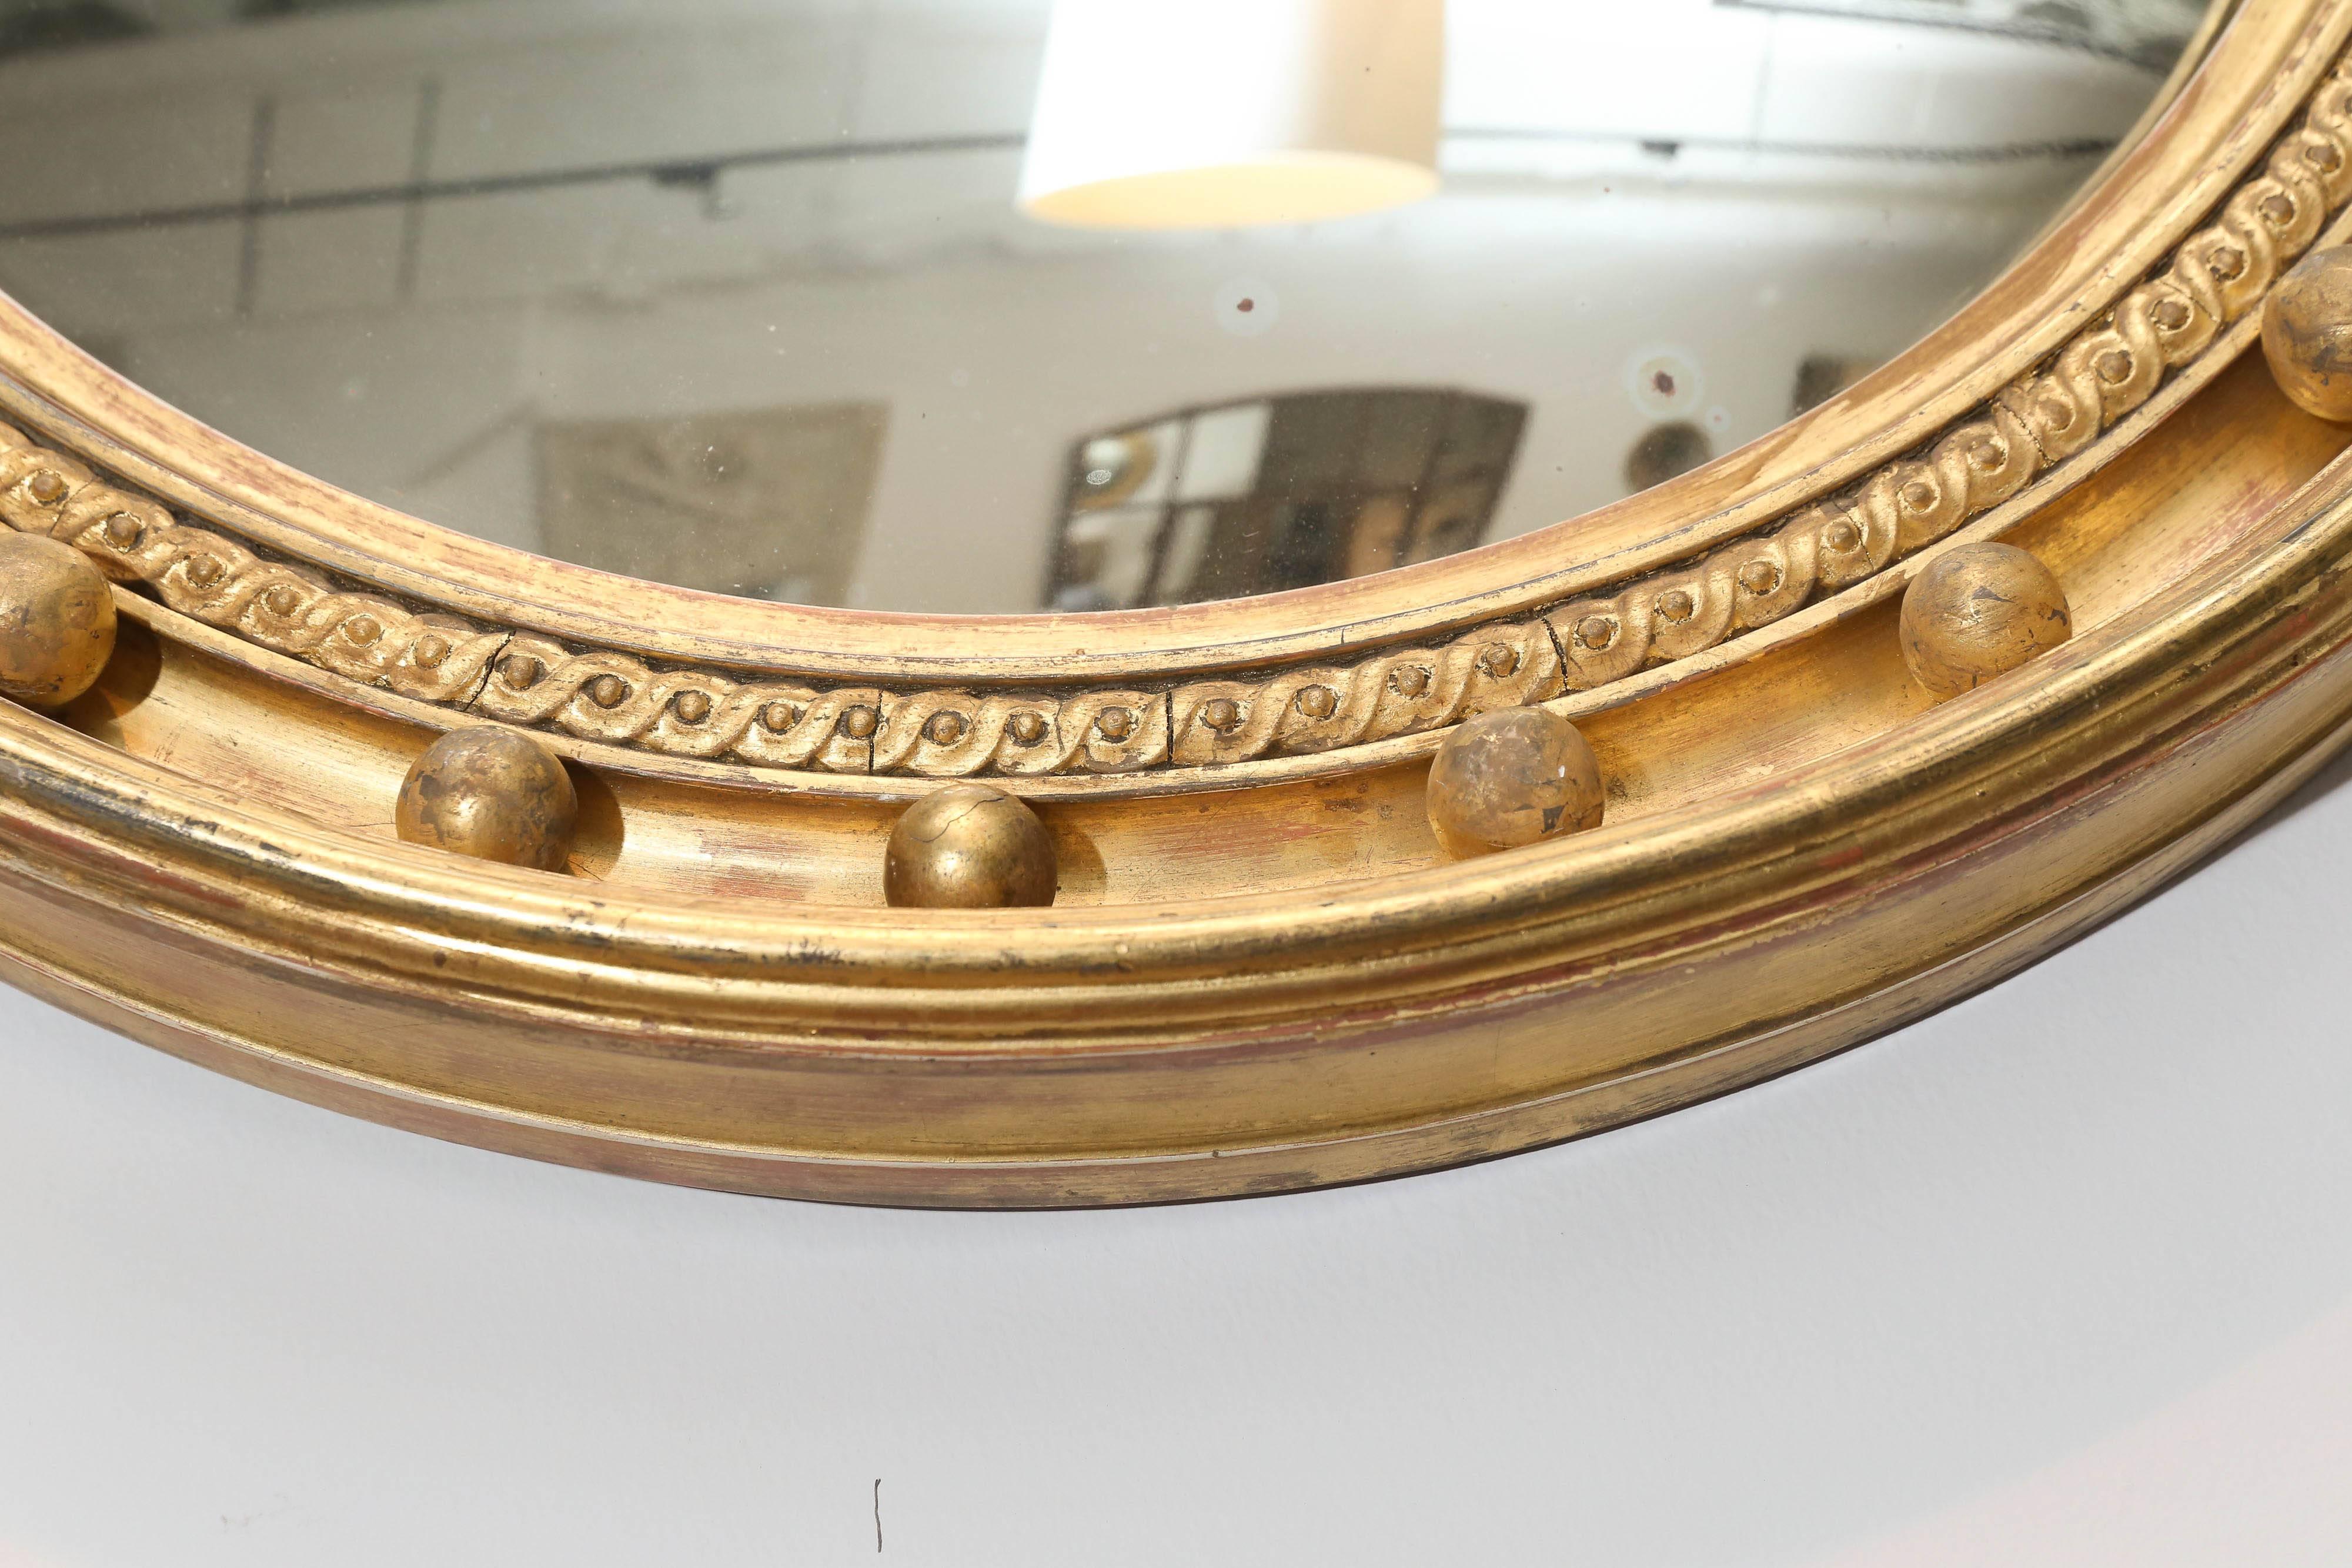 miroir convexe du 19e siècle avec verre original de la période Regency. Belle dorure à l'eau.